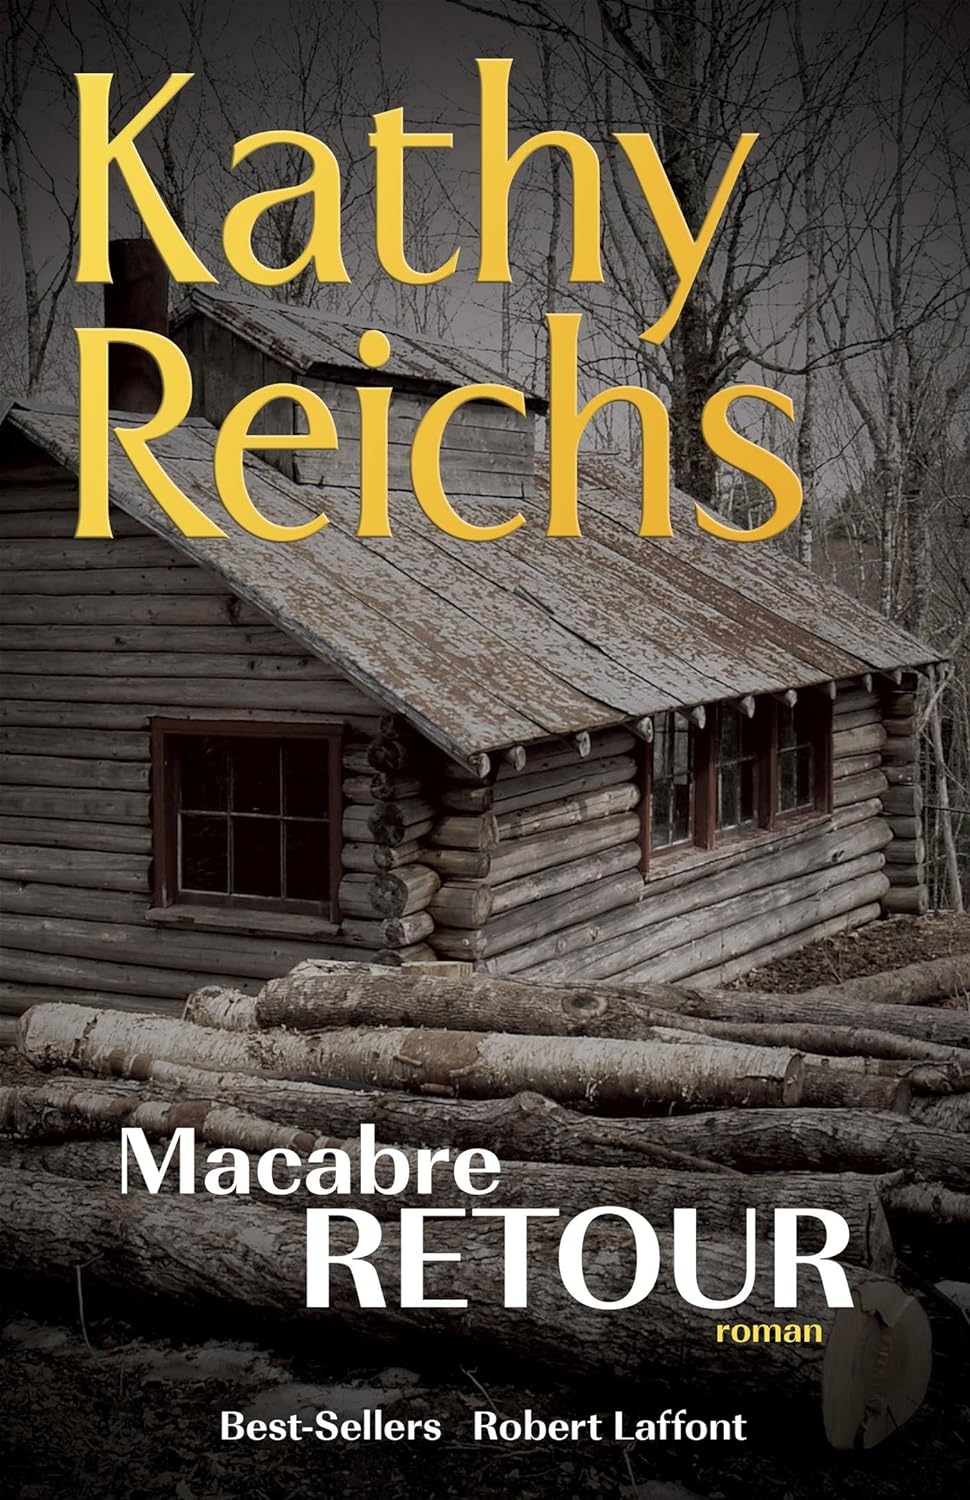 Macabre retour - Kathy Reichs